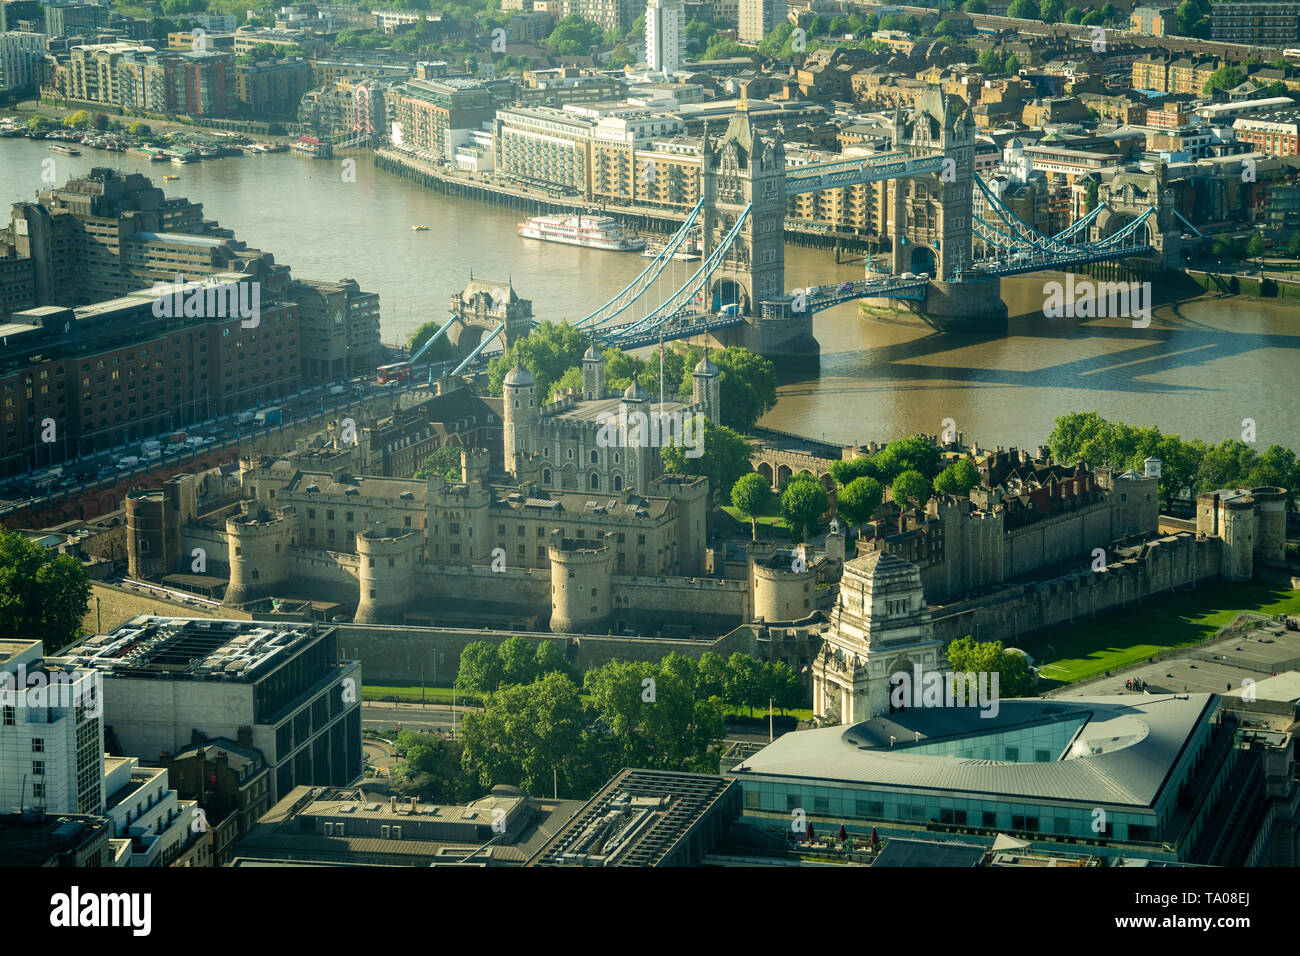 Vedute della Torre di Londra come visto da Searcys al piano superiore del Gherkin Building a Londra. Foto Data: martedì 21 maggio, 2019. Foto: Roger Foto Stock